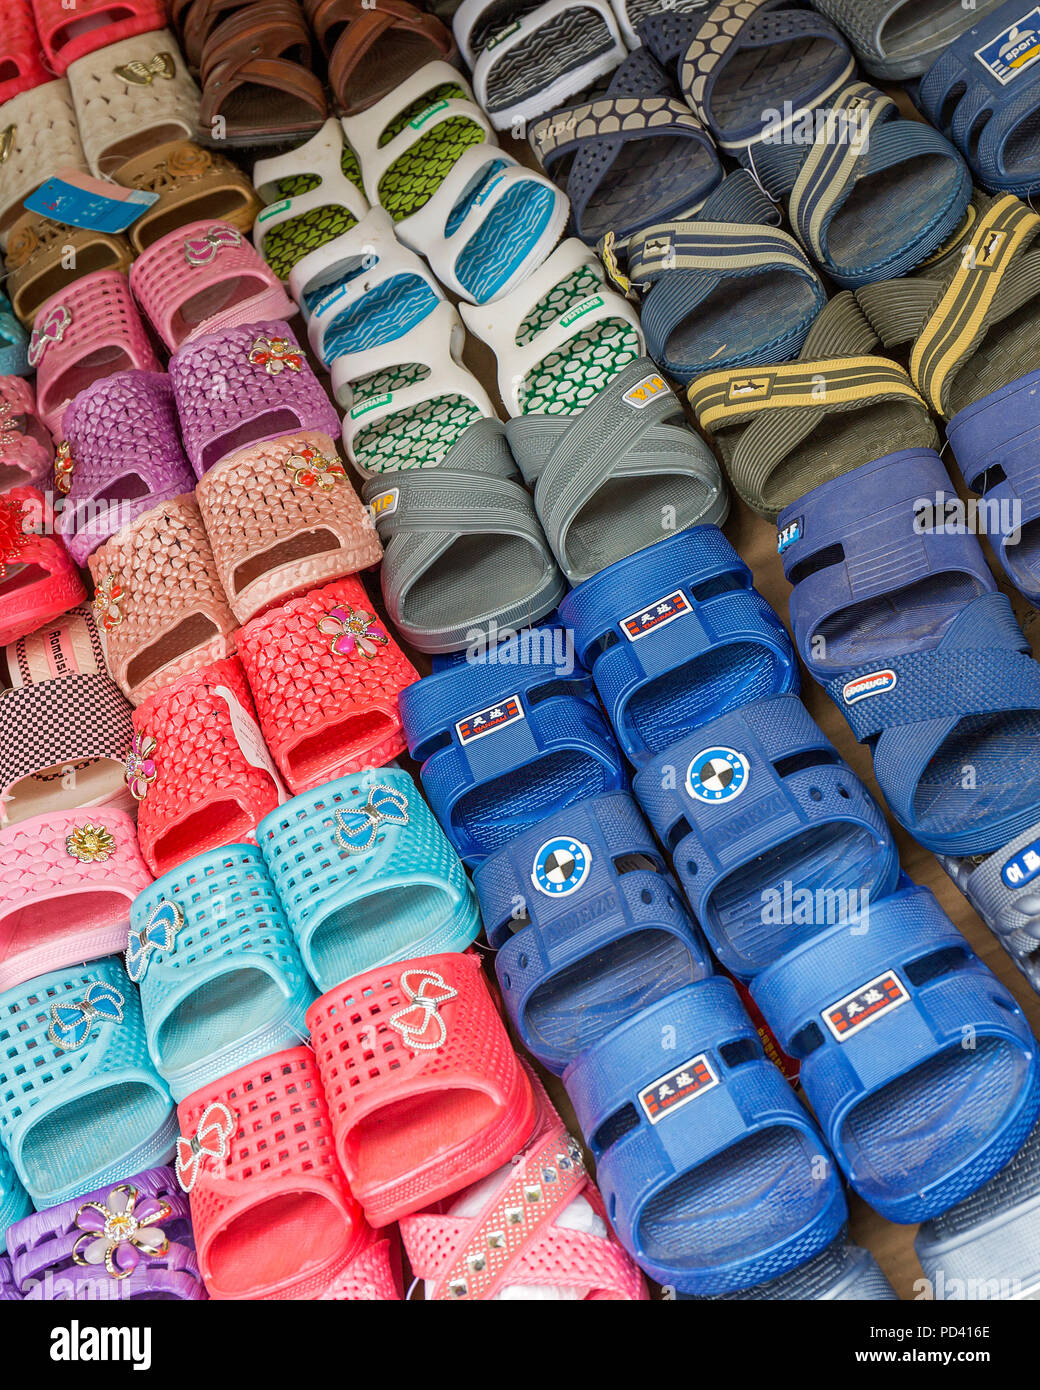 Sandalias de plástico Fotografía de - Alamy